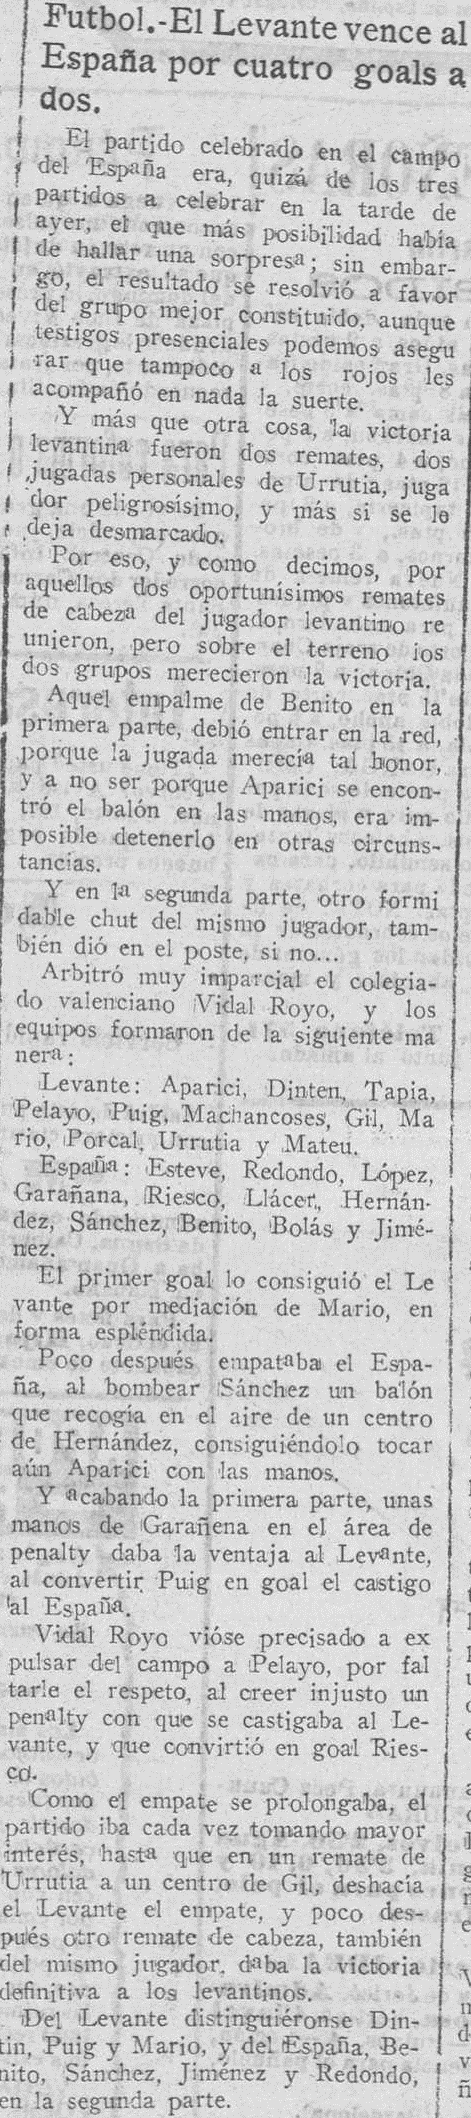 1925.01.18 (18 января 1925), Эспанья - Леванте, 2-4.png